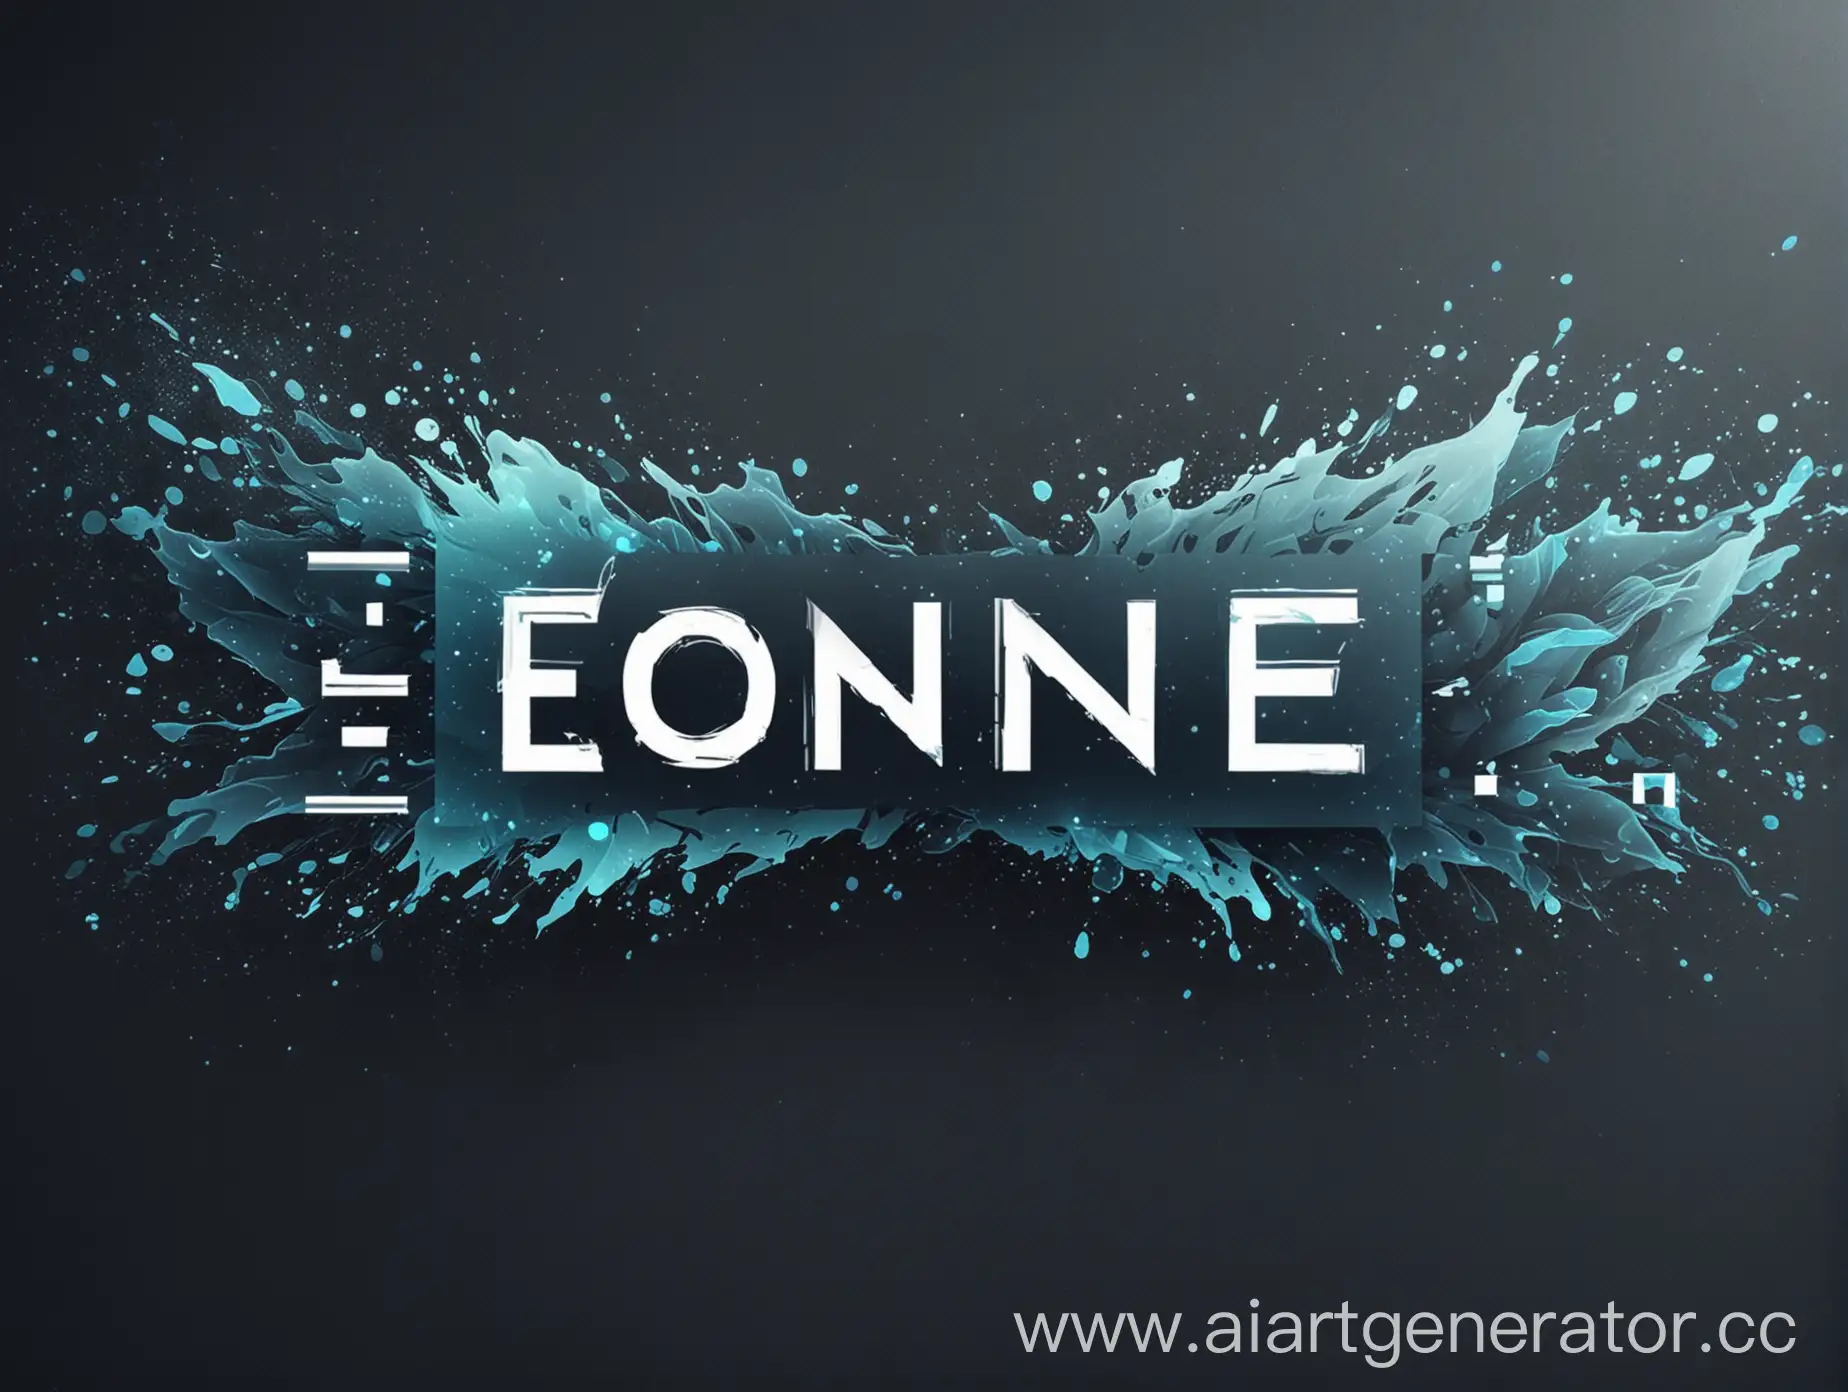 Хочу красивый банер с логотипоп Eoniqe для ютуб канала В холодных цветах